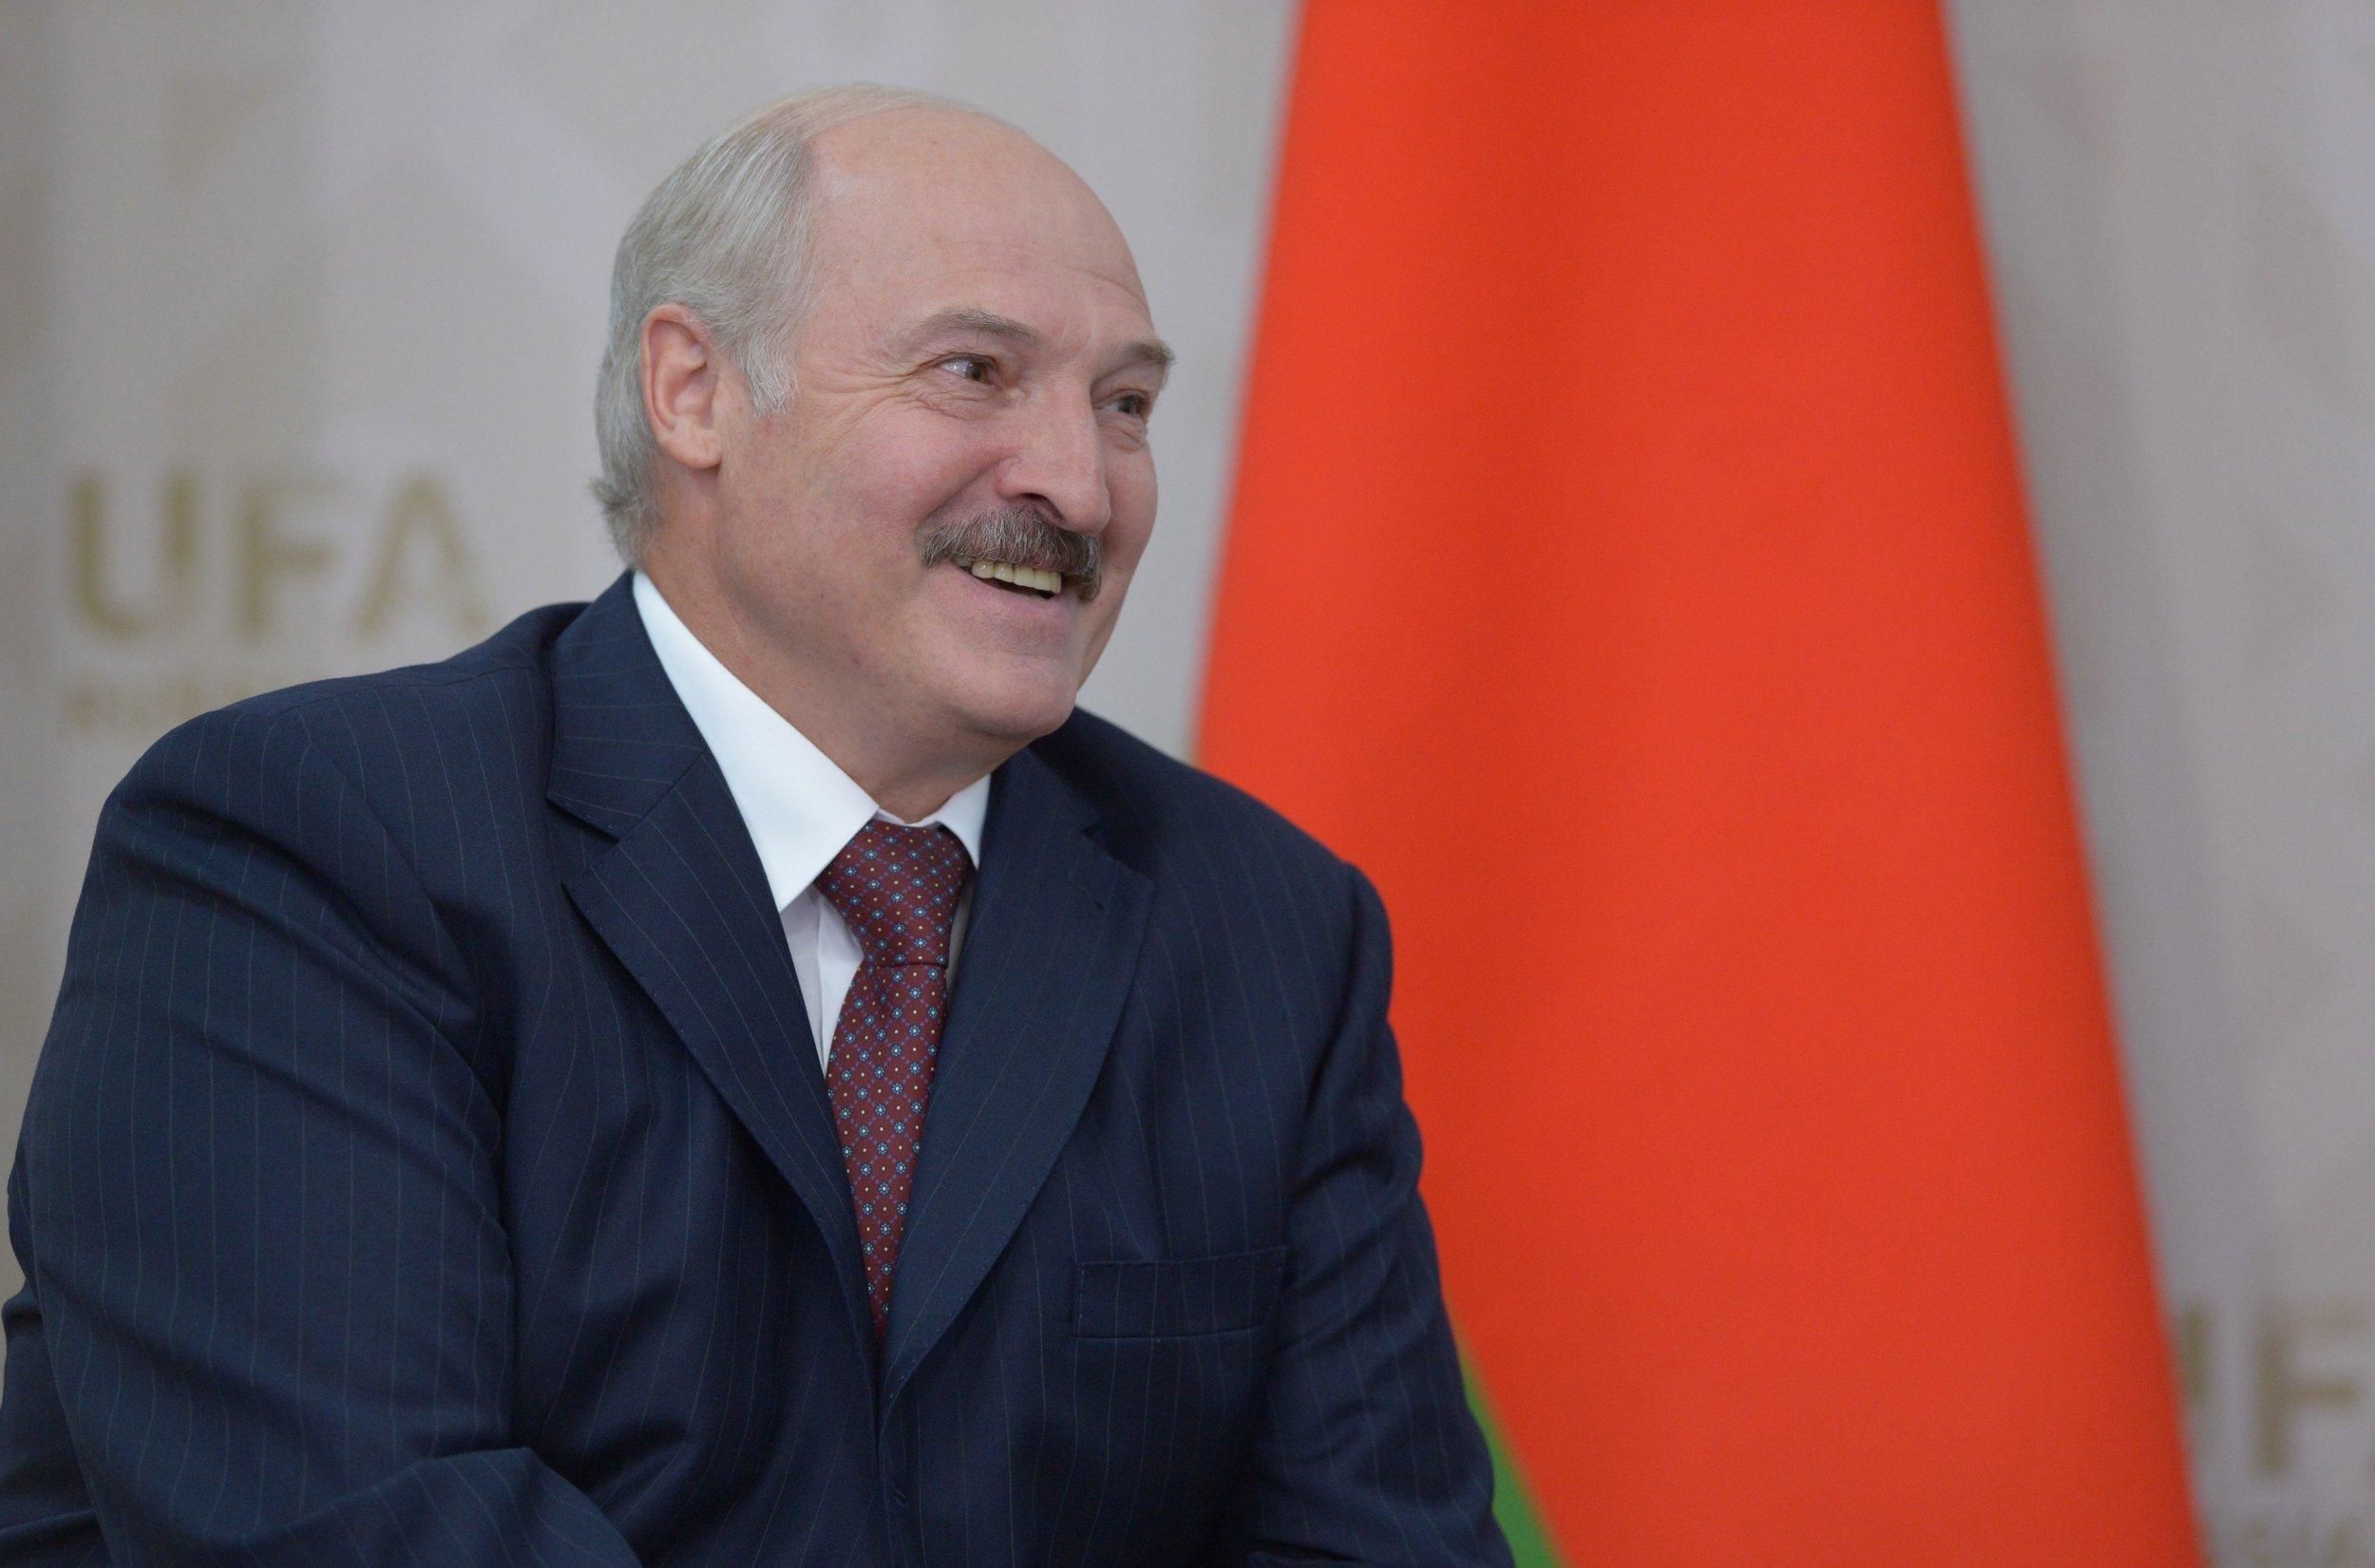  Лукашенко використає в політичних цілях, – білоруський політик про затримання вагнерівців